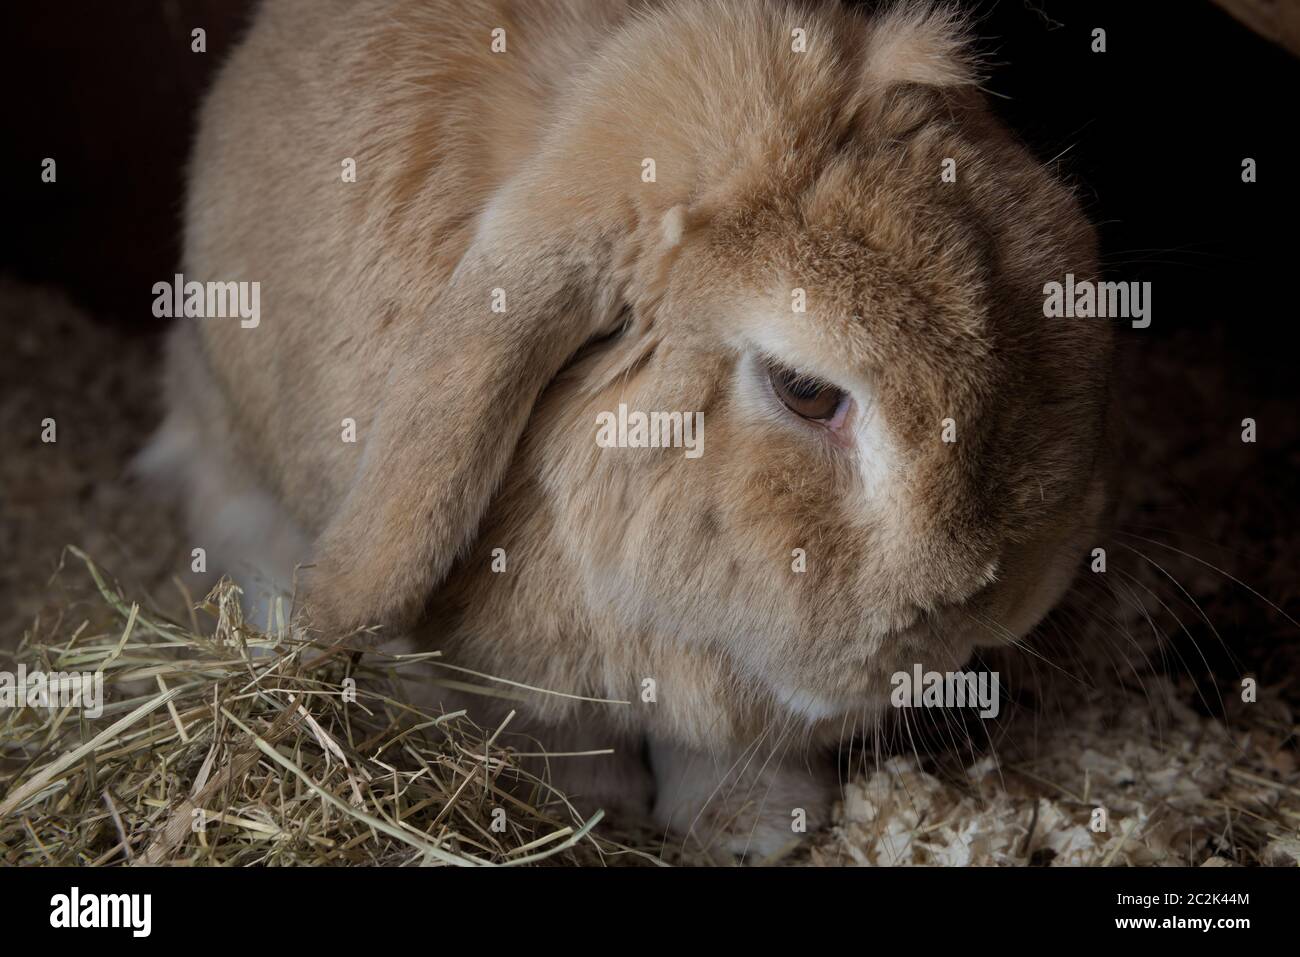 Il coniglio di PET, lop olandese nana, siede tra segatura e fieno. Appare una moodia con uno sfondo scuro dal flash. Guardando verso il basso e di lato. Foto Stock